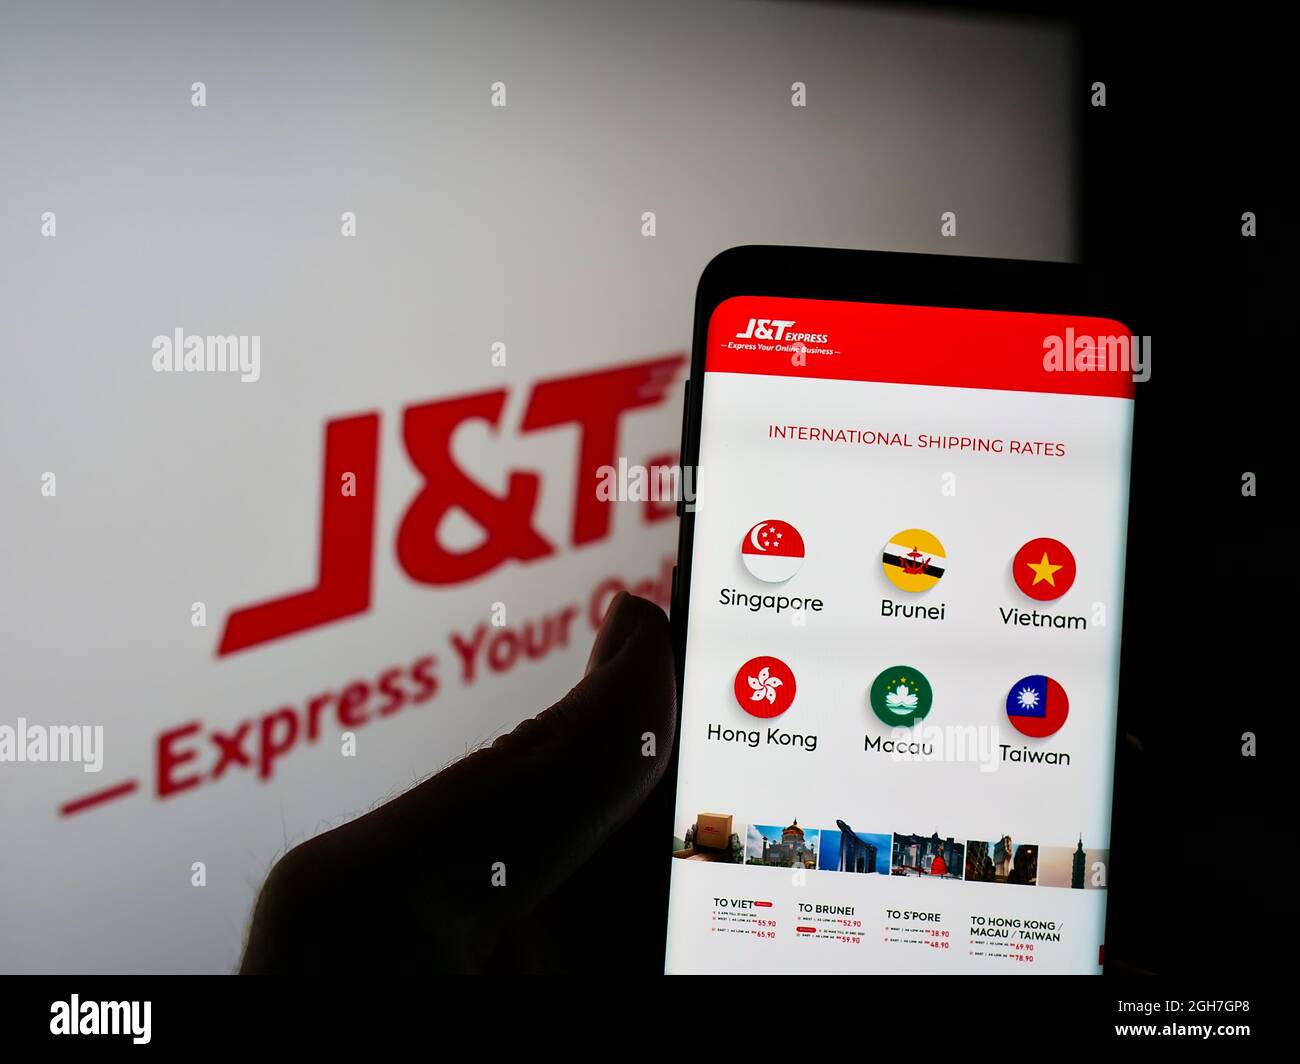 Personne tenant un smartphone avec le site Web de la société indonésienne PT Global Jet Express (JT) à l'écran devant le logo de l'entreprise. Mise au point sur l'affichage du téléphone. Banque D'Images